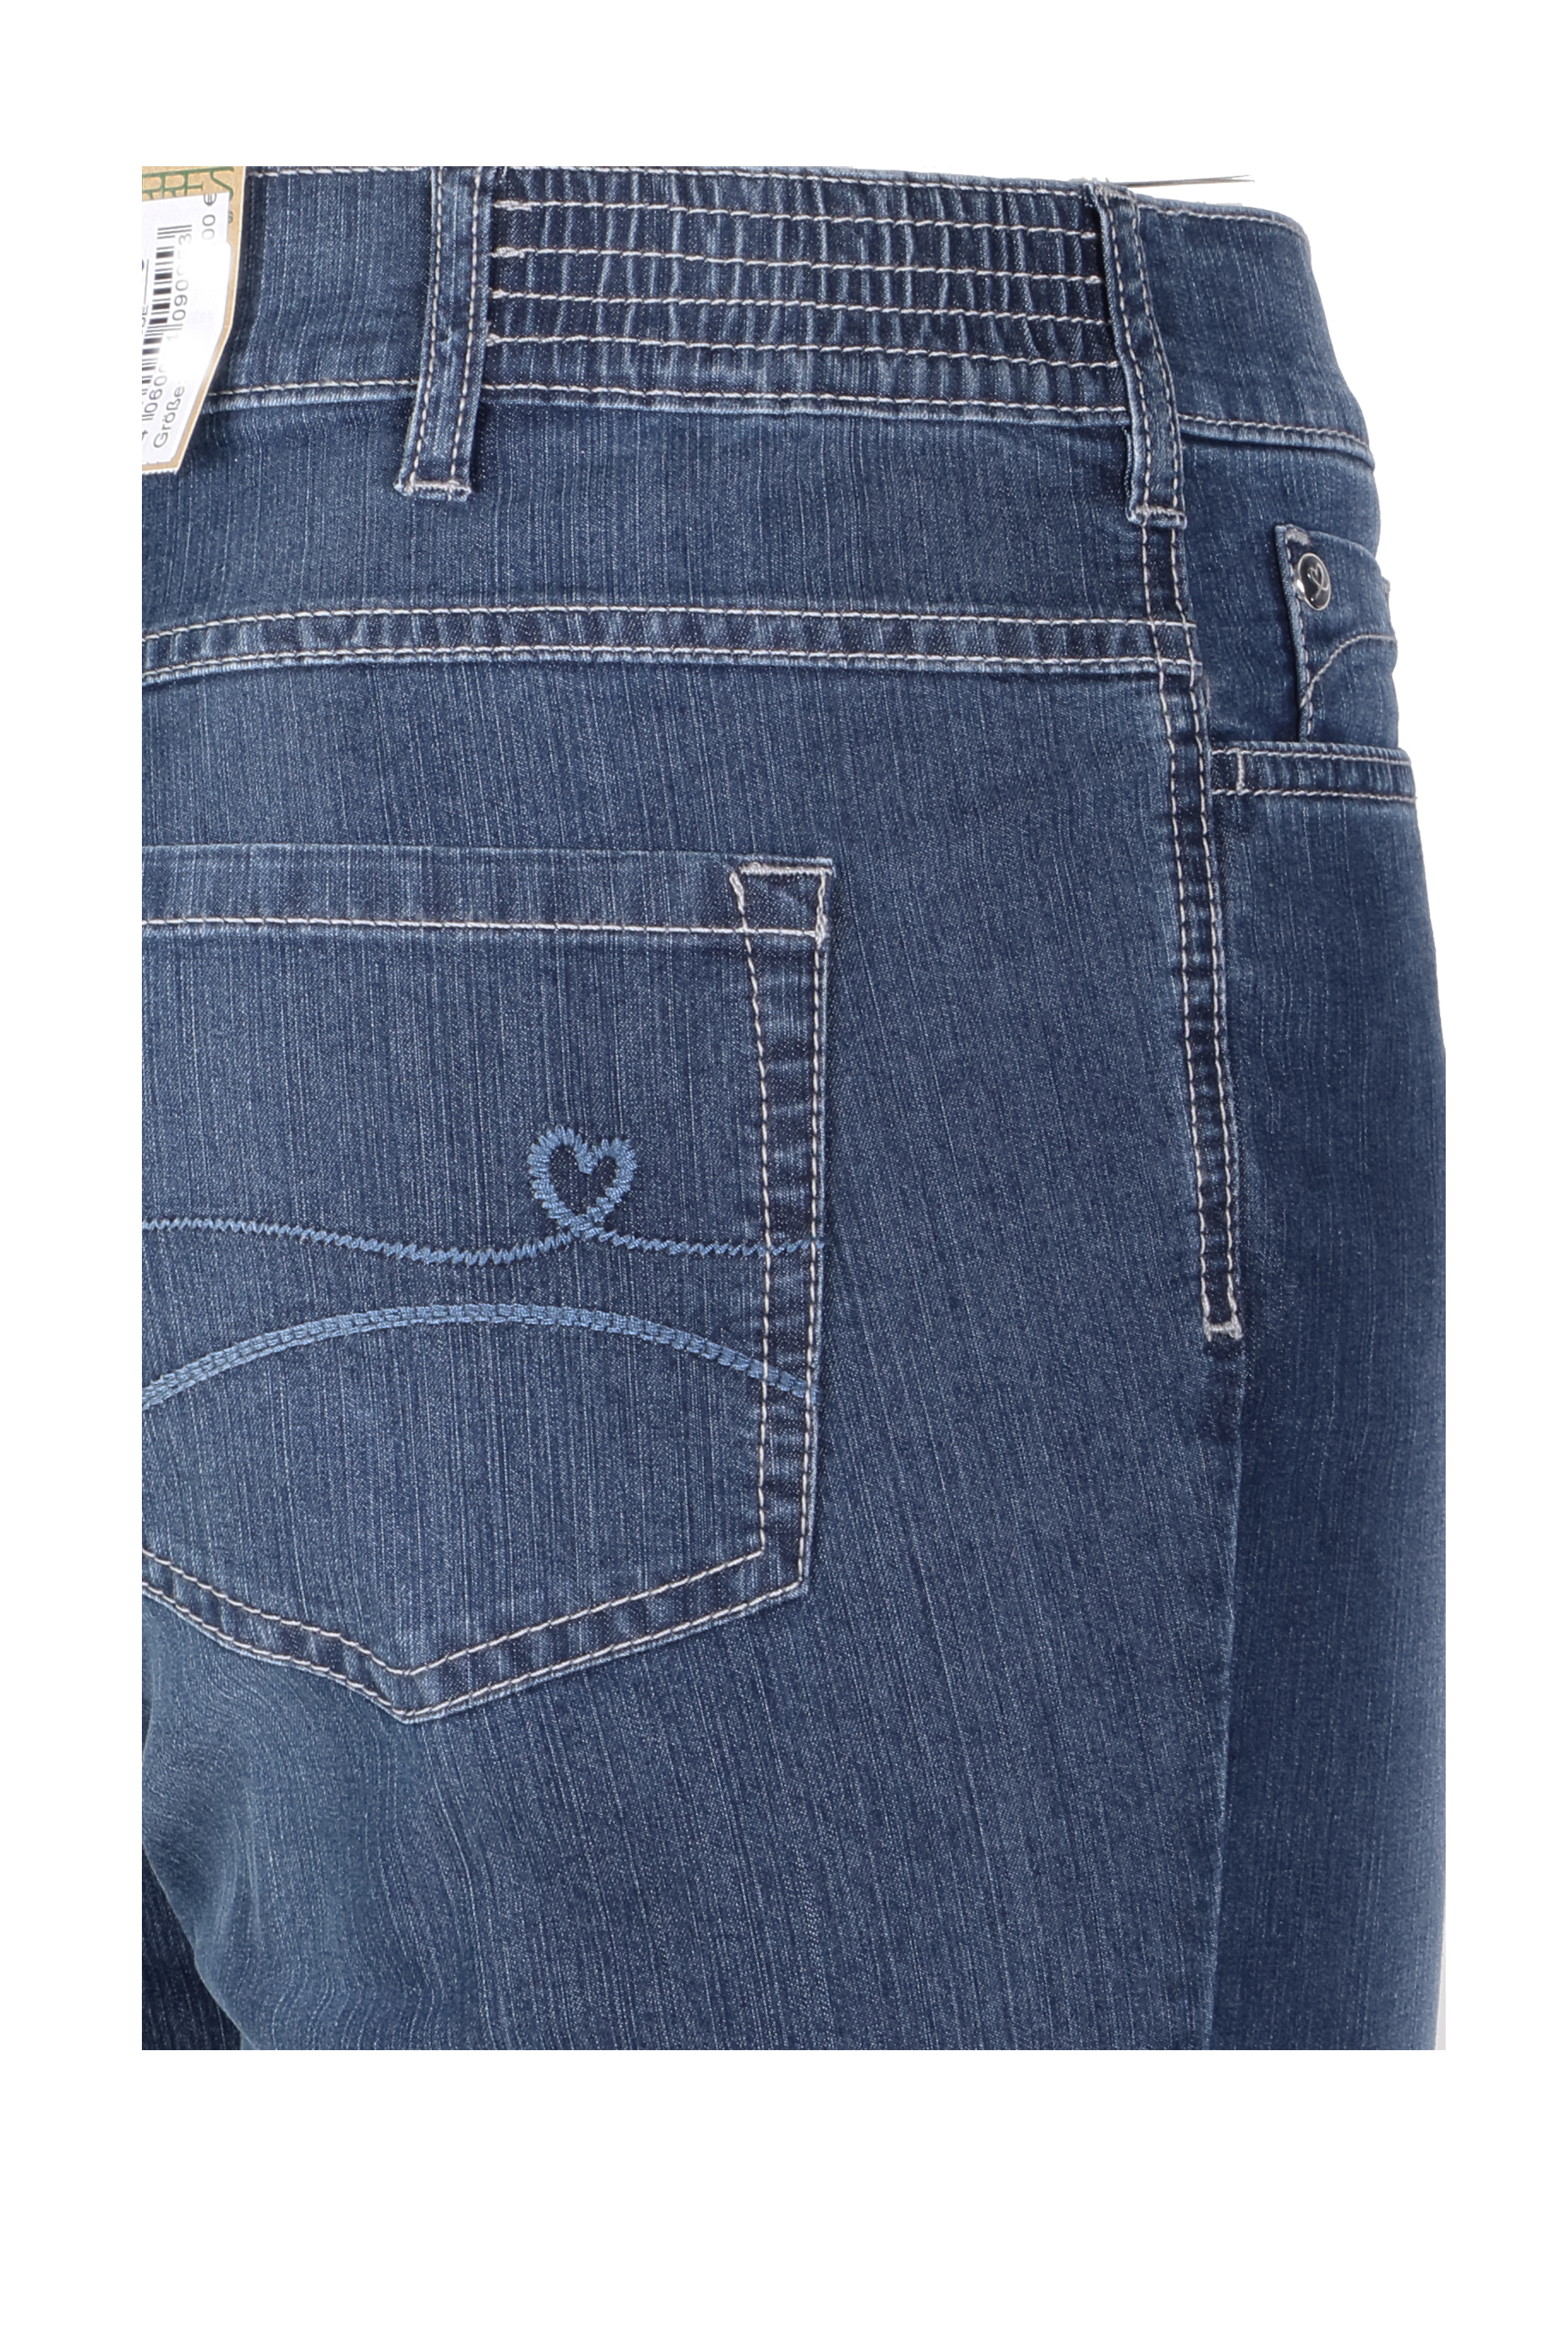 Zerres Damen Jeans Greta sommerliche Qualität - blau 40